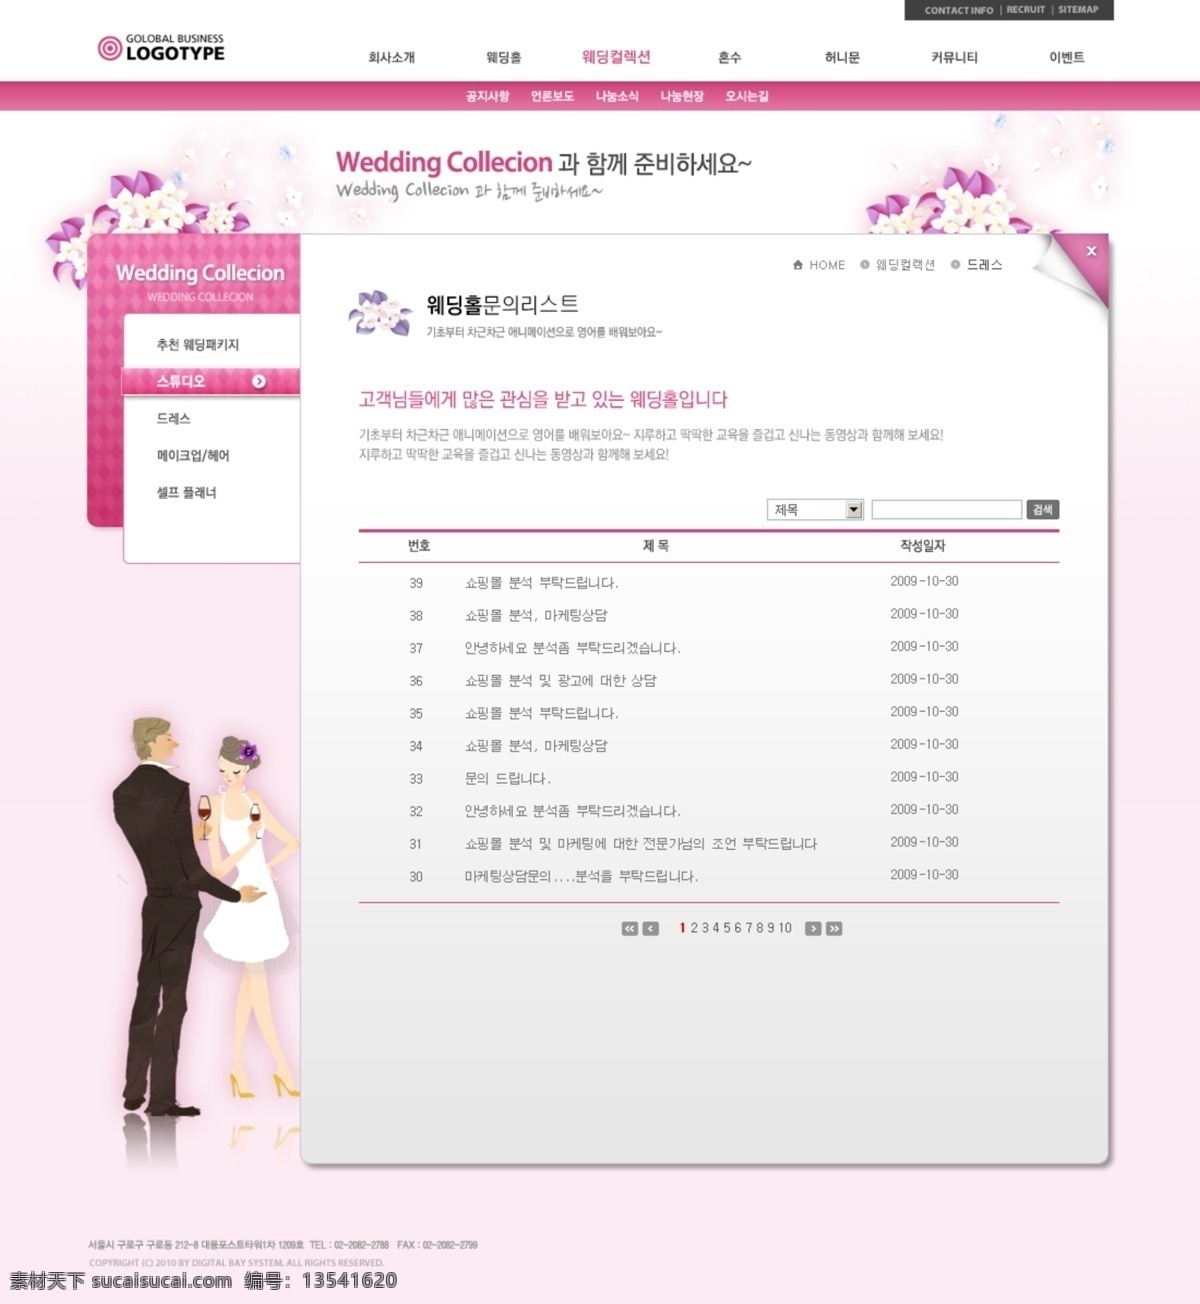 韩国 蜜月 婚纱 之旅 公司 网页模板 墼 禄 樯 粗 霉 衬 网页素材